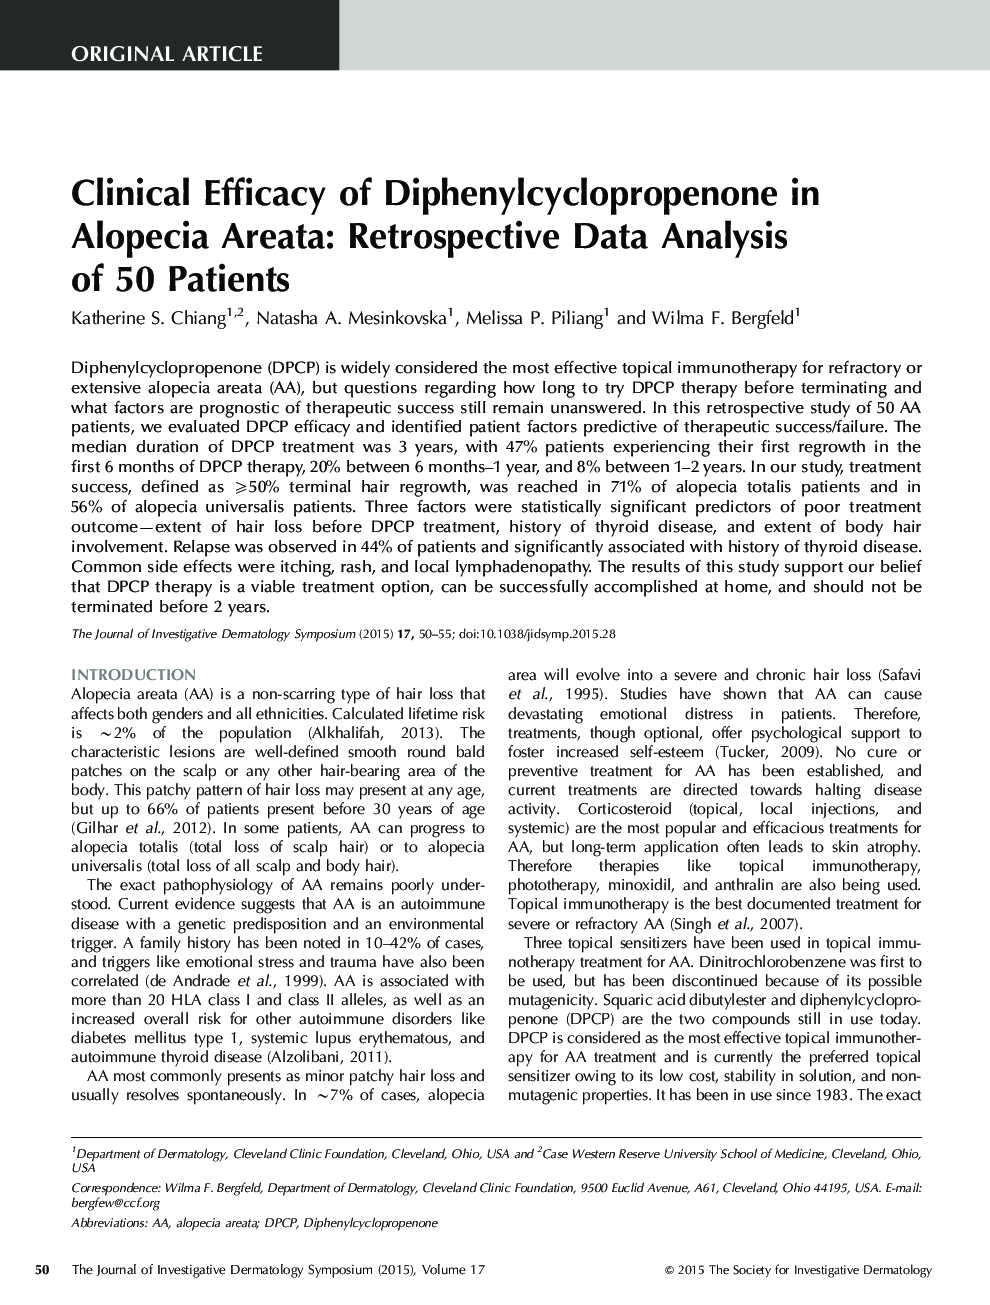 اثربخشی بالینی دیفنیل سیکلوپروپرونون در آلوپسی آرئات: تجزیه و تحلیل داده های گذشته نگر در 50 بیمار 